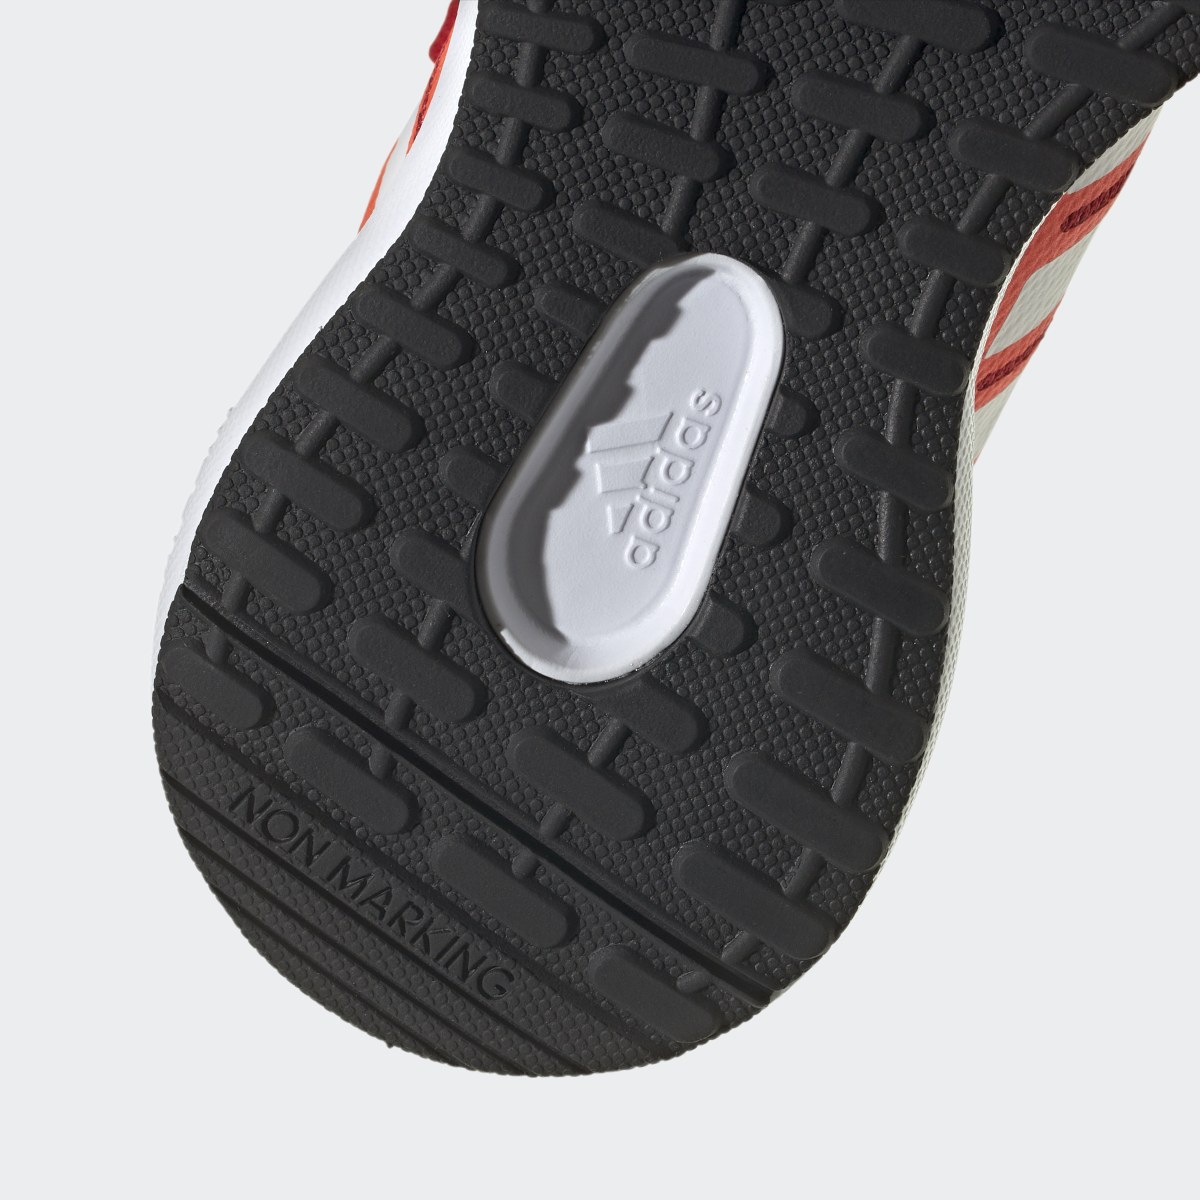 Adidas FortaRun 2.0 Cloudfoam Shoes. 9